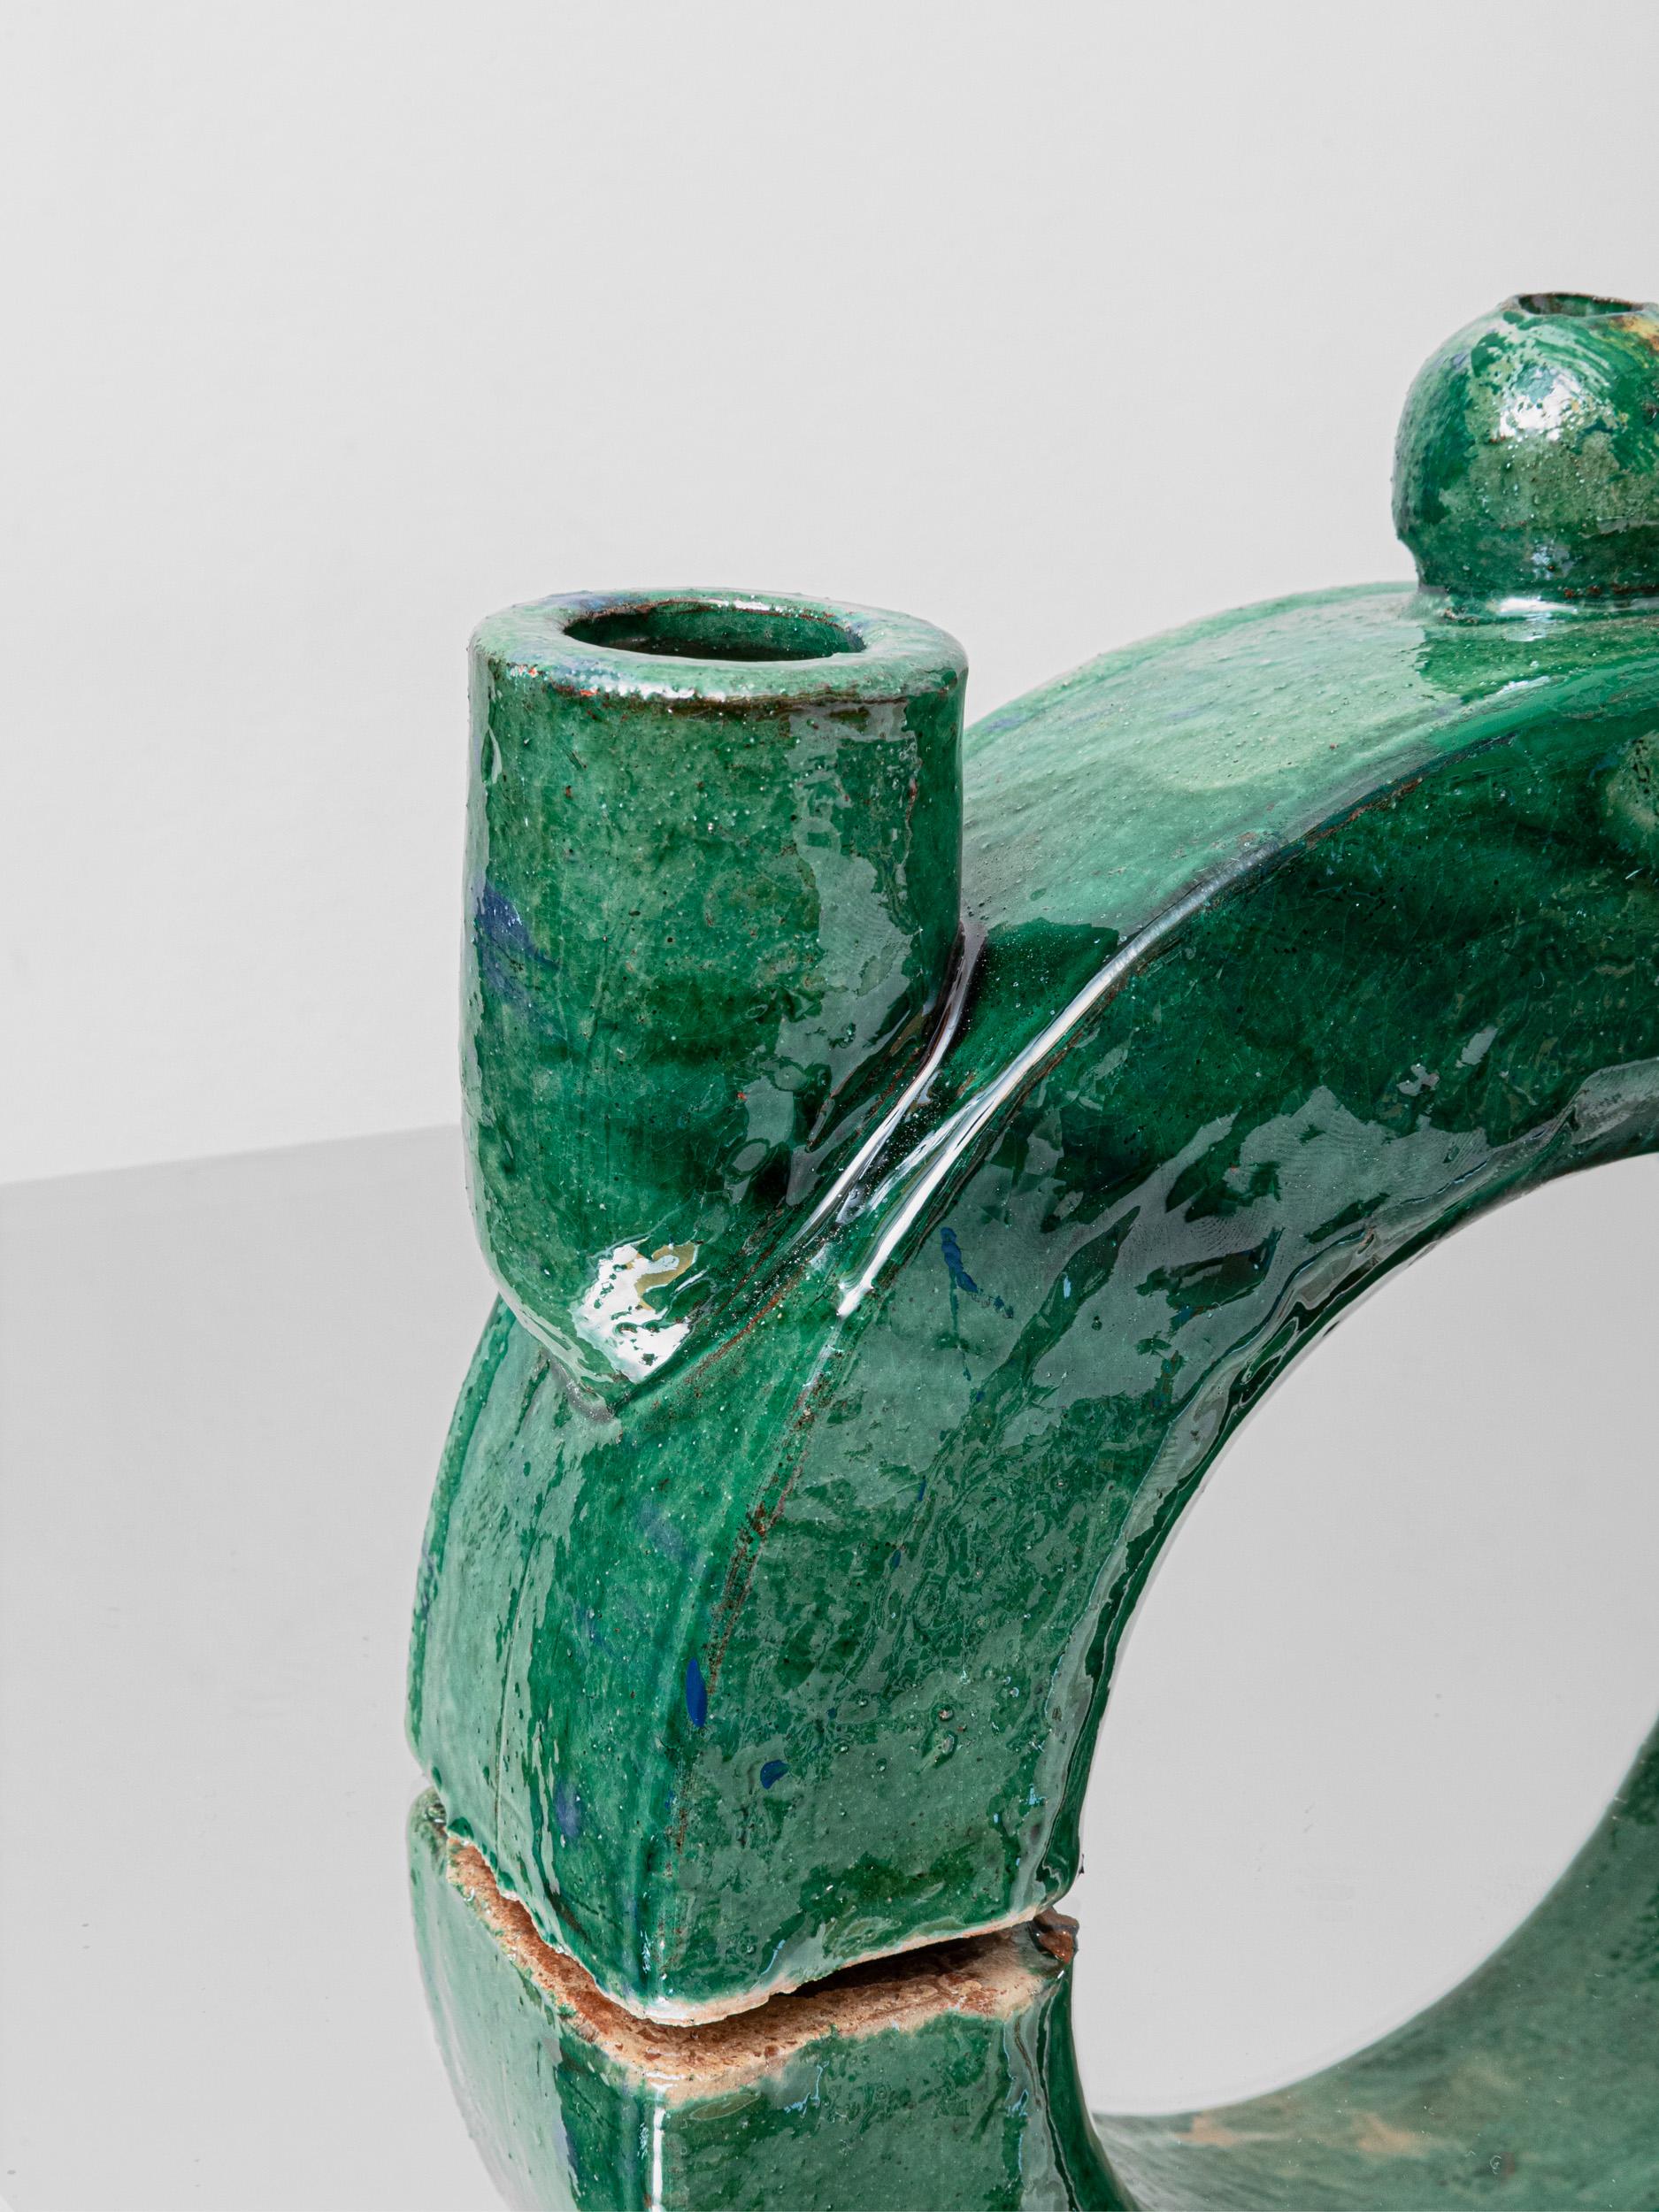 Collection de chandeliers de Sophie Dries

MINELO est un bougeoir conçu par Sophie Dries et fabriqué par les habiles artisans de Seminara, dans la région de Calabre, au sud de l'Italie. Le MINELO est un pont créé en coupant un cercle en deux, et